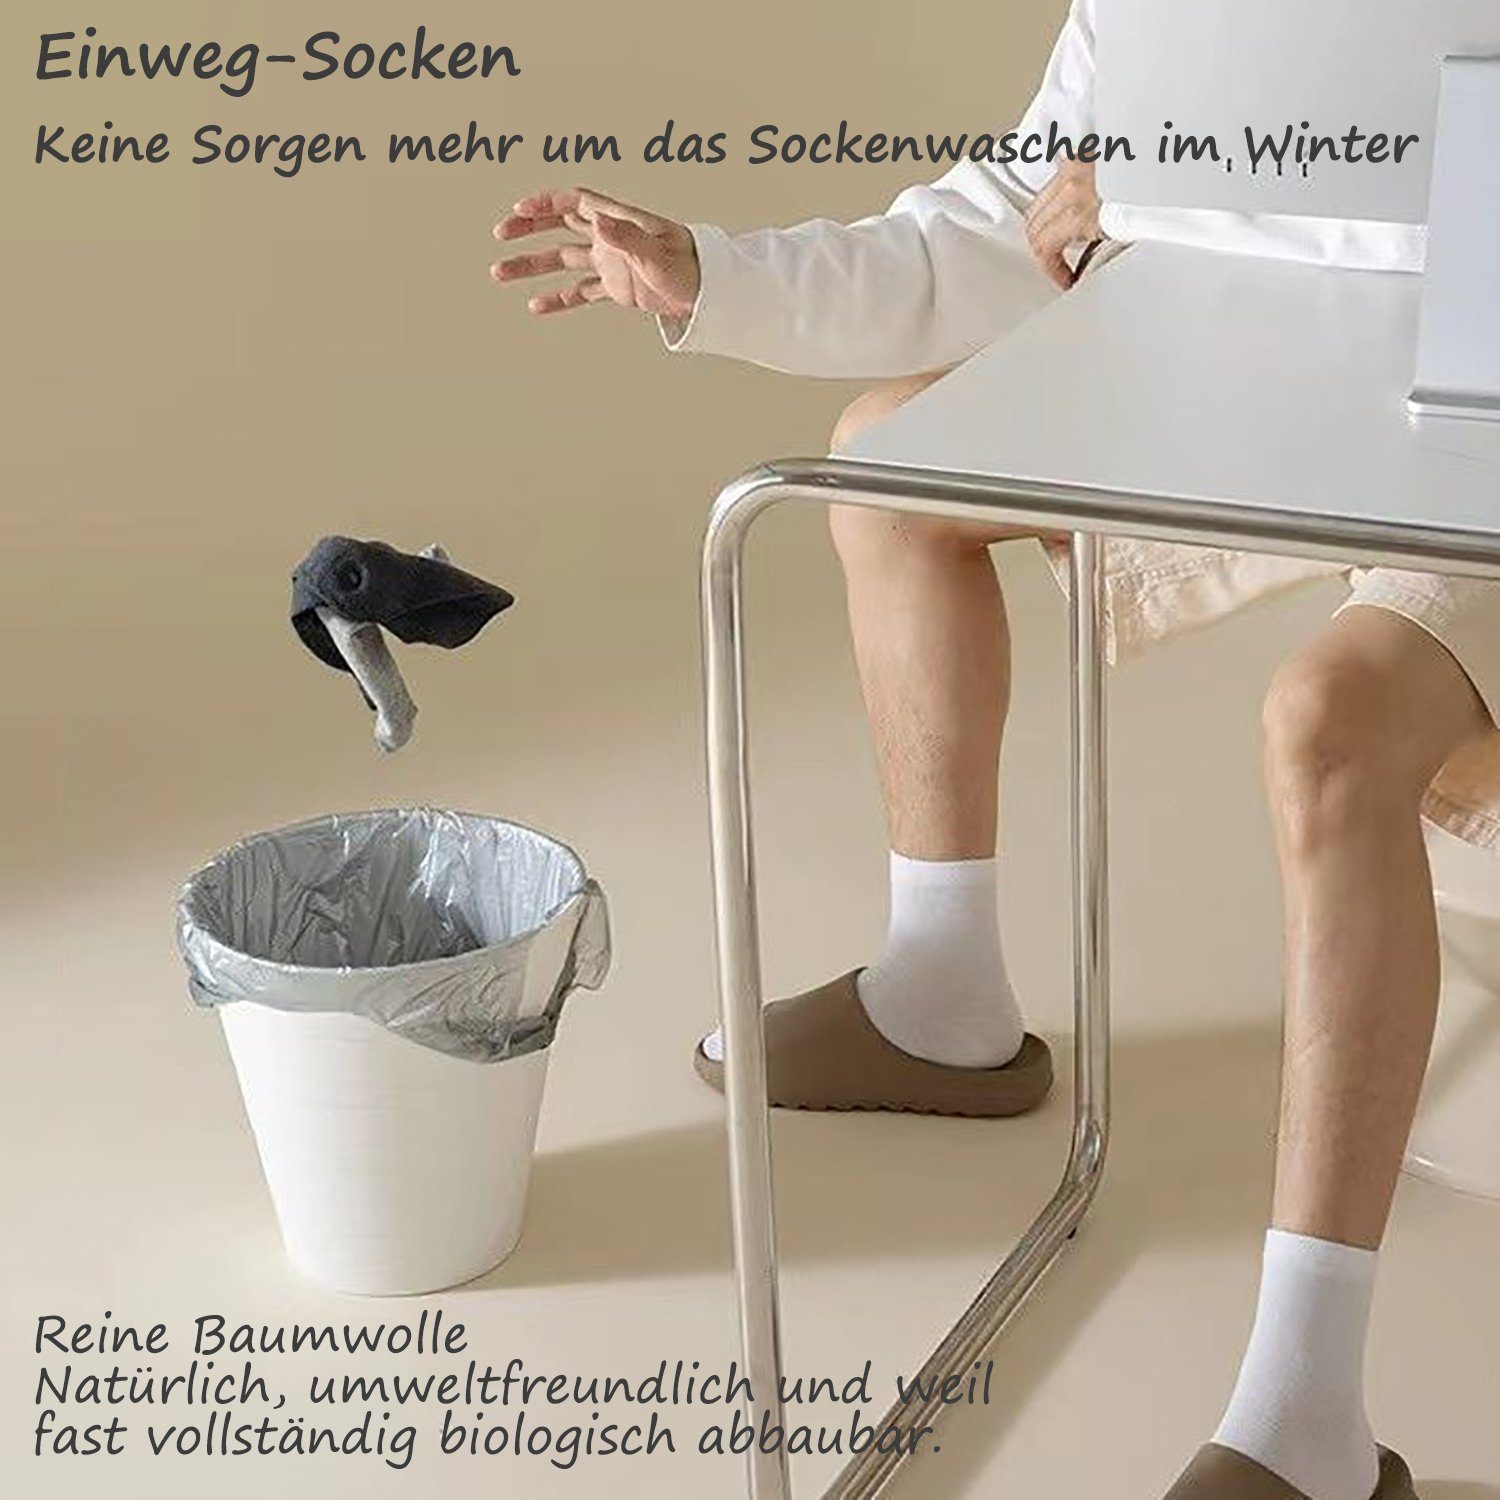 Freizeitsocken Baum-wolle Einweg-Socken Sportsocken Unisex 30 Paar Grau Daisred